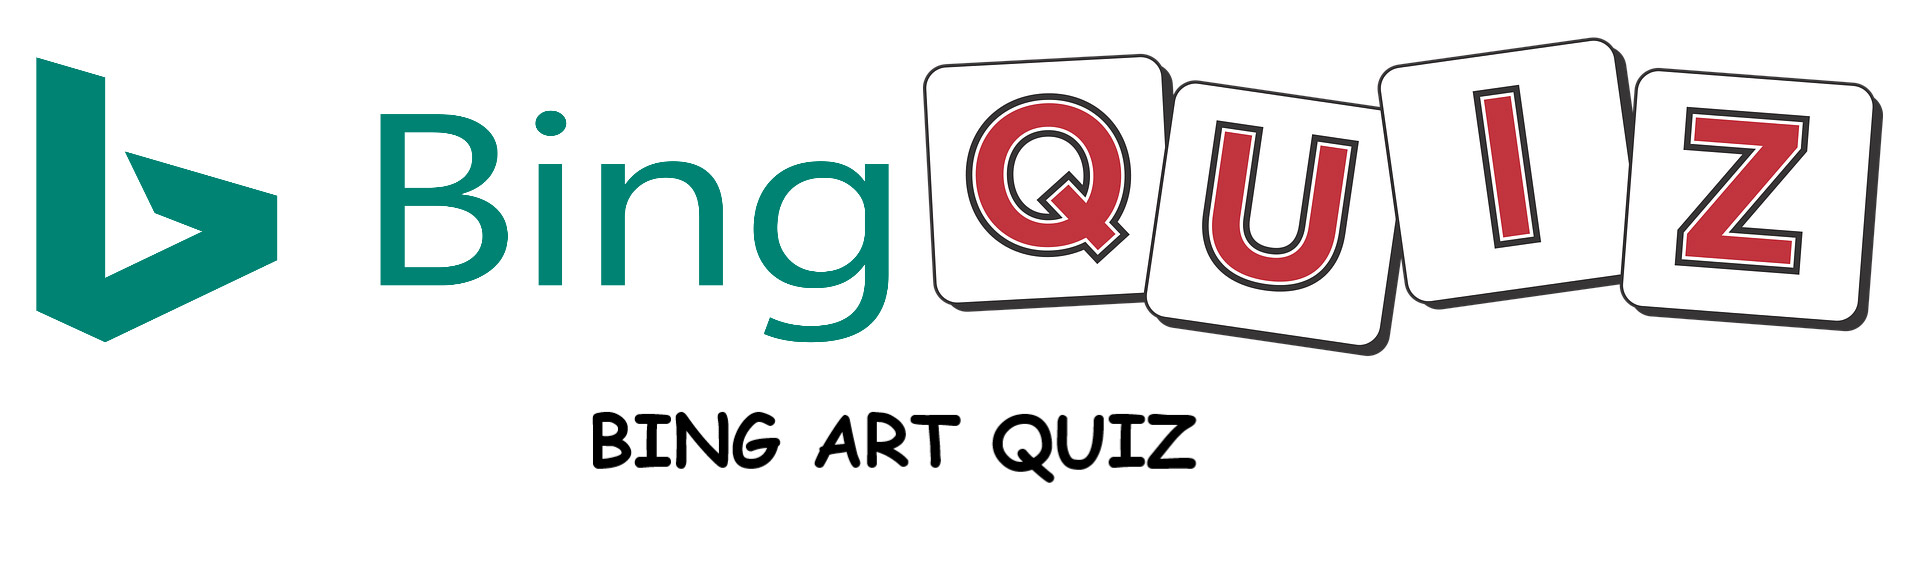 Bing Art Quiz